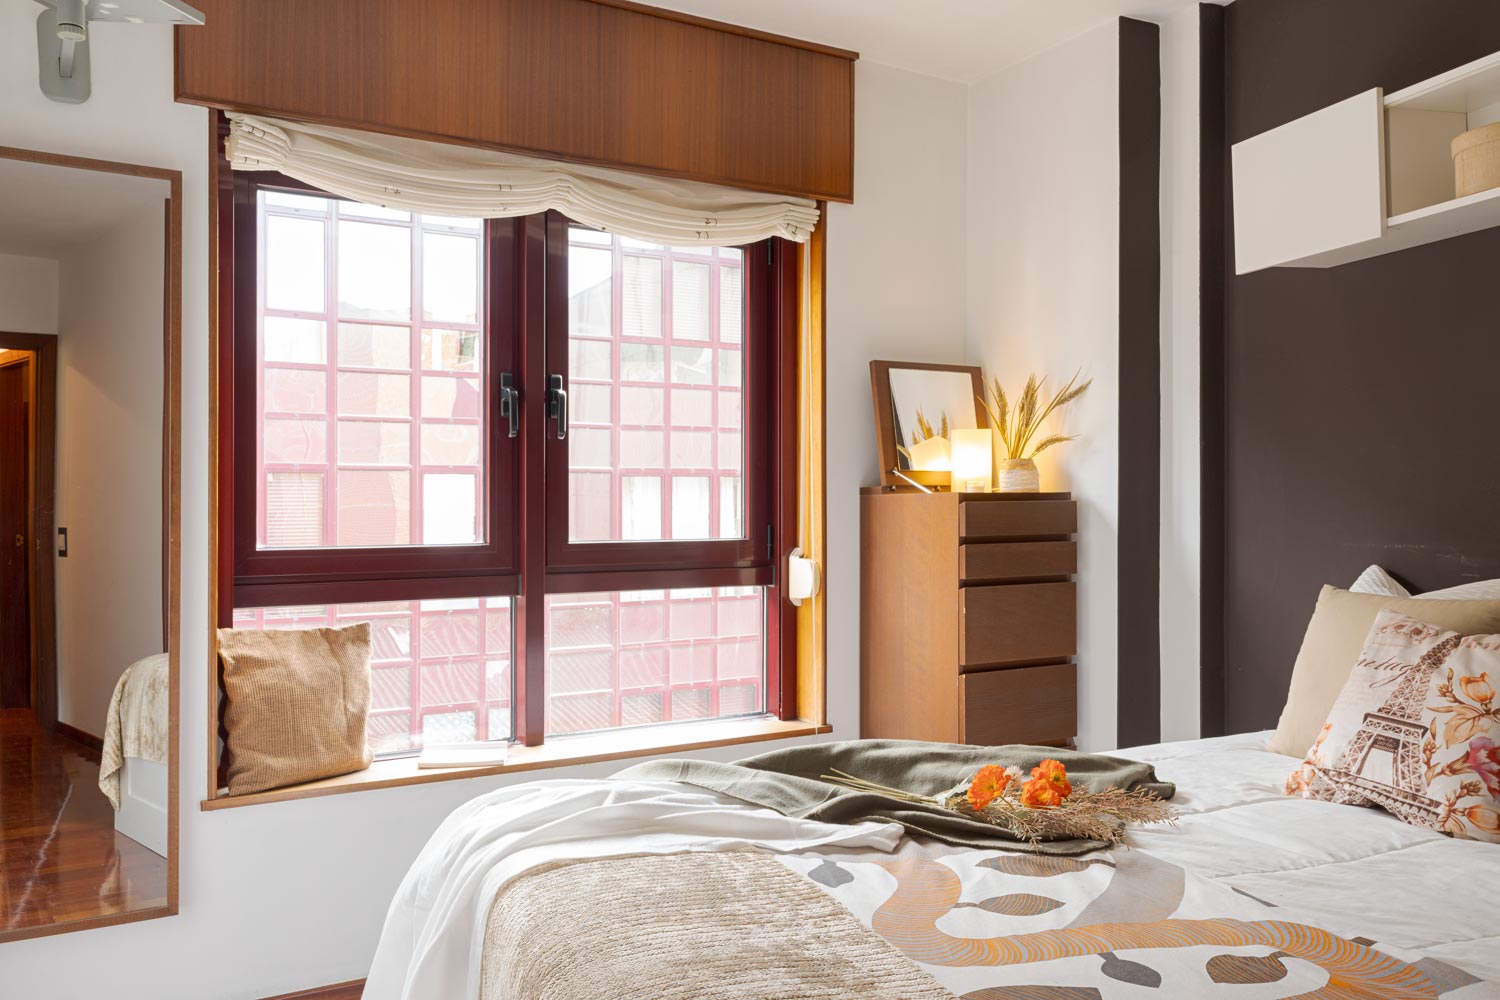 Dormitorio con gran ventanal en aluminio granate y paredes en tono marrón chocolate, con cama. Habitación preparada con Home staging